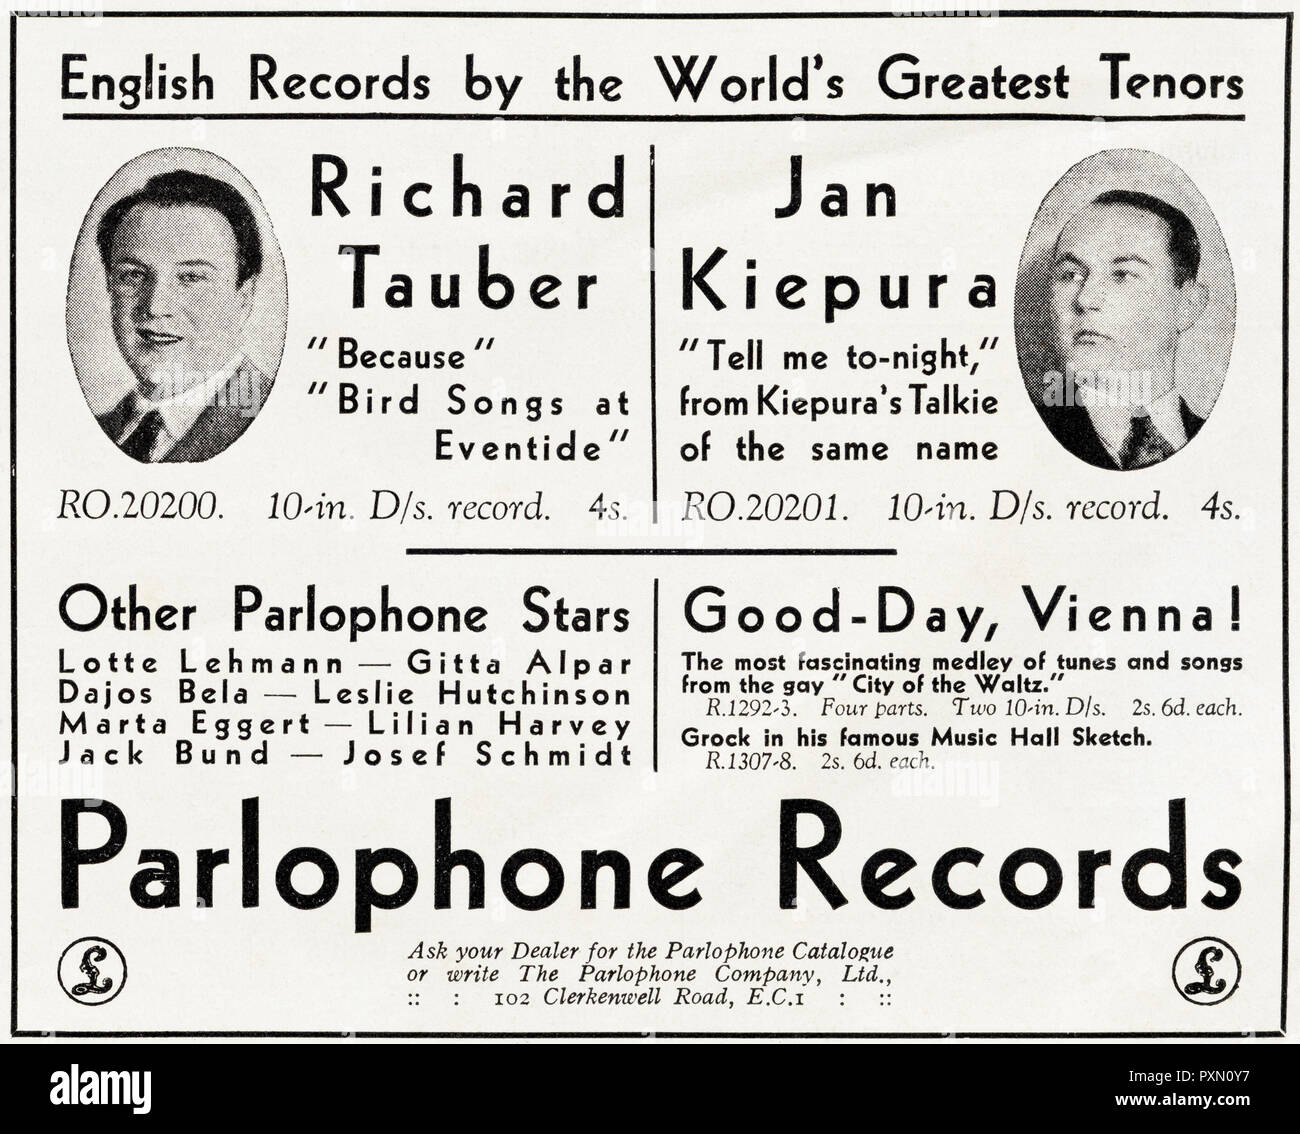 1930s vecchio vintage originale pubblicità pubblicità Parlophone Record con tenori Richard Tauber e Jan Kiepura nella rivista inglese circa 1932 Foto Stock